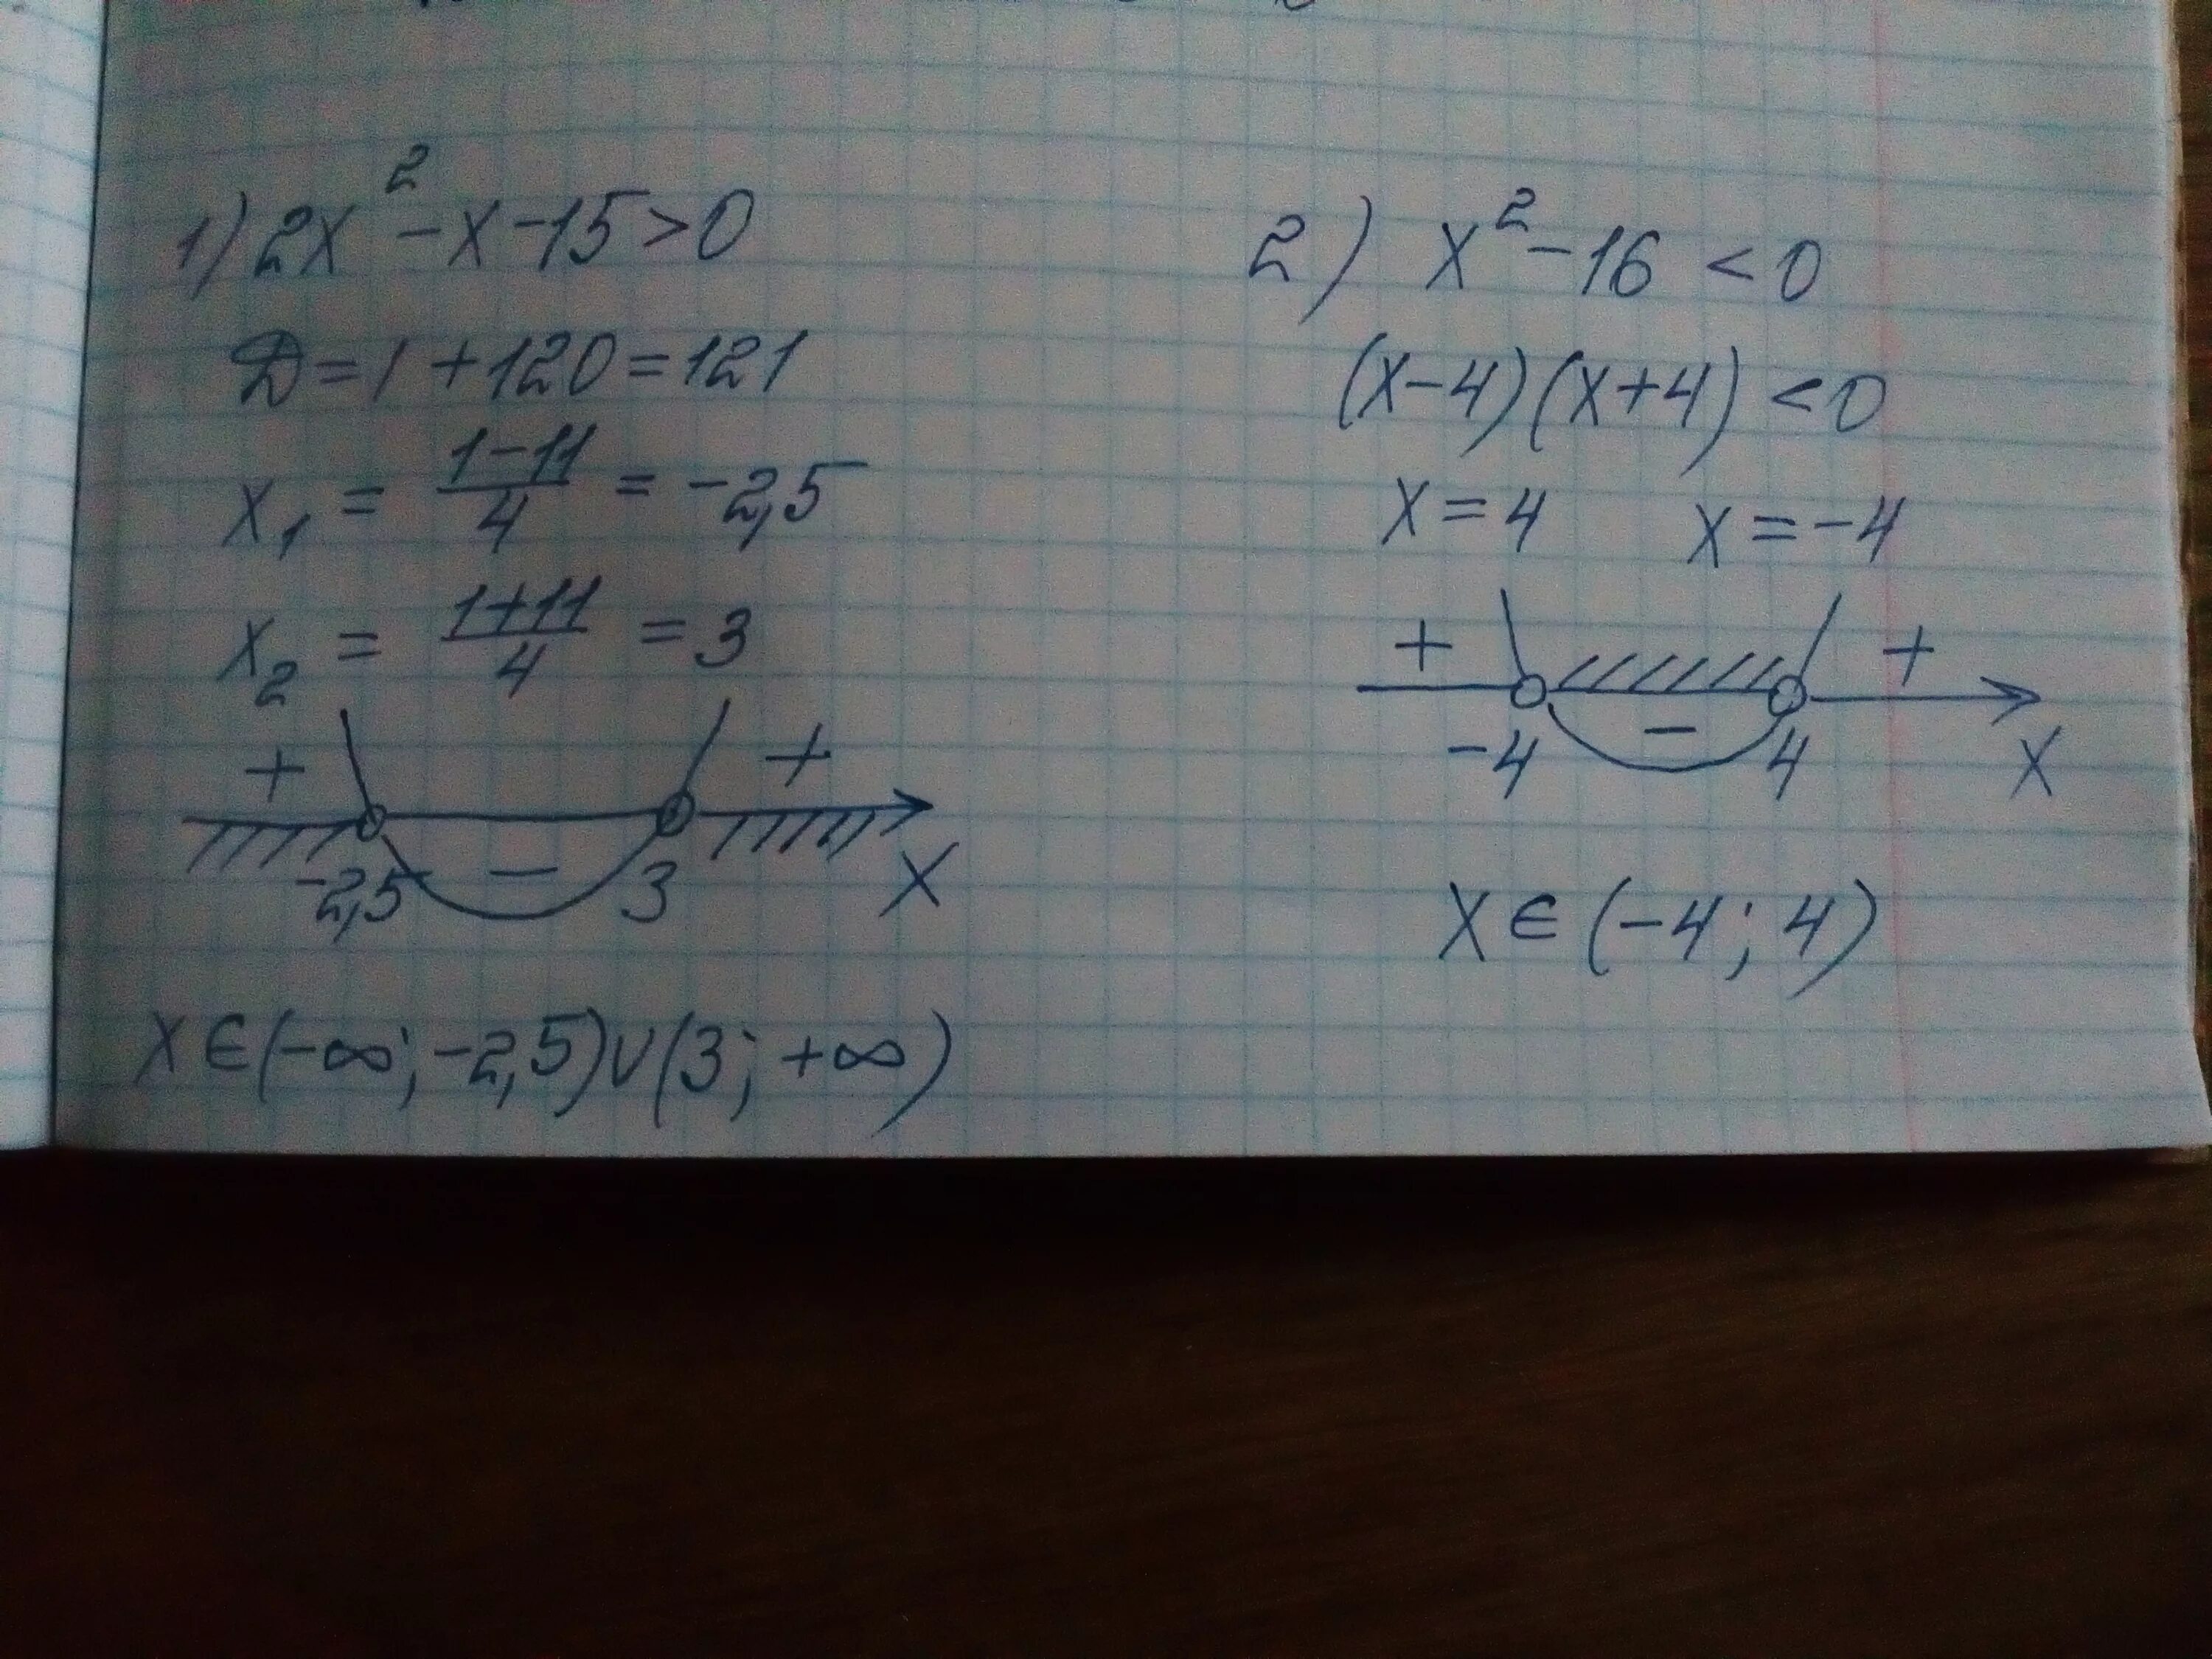 X2 2x x 2 15 x 2. X2-15=2x. X2-2x-15=0. X X + = 2 15.. X2+15x>0.